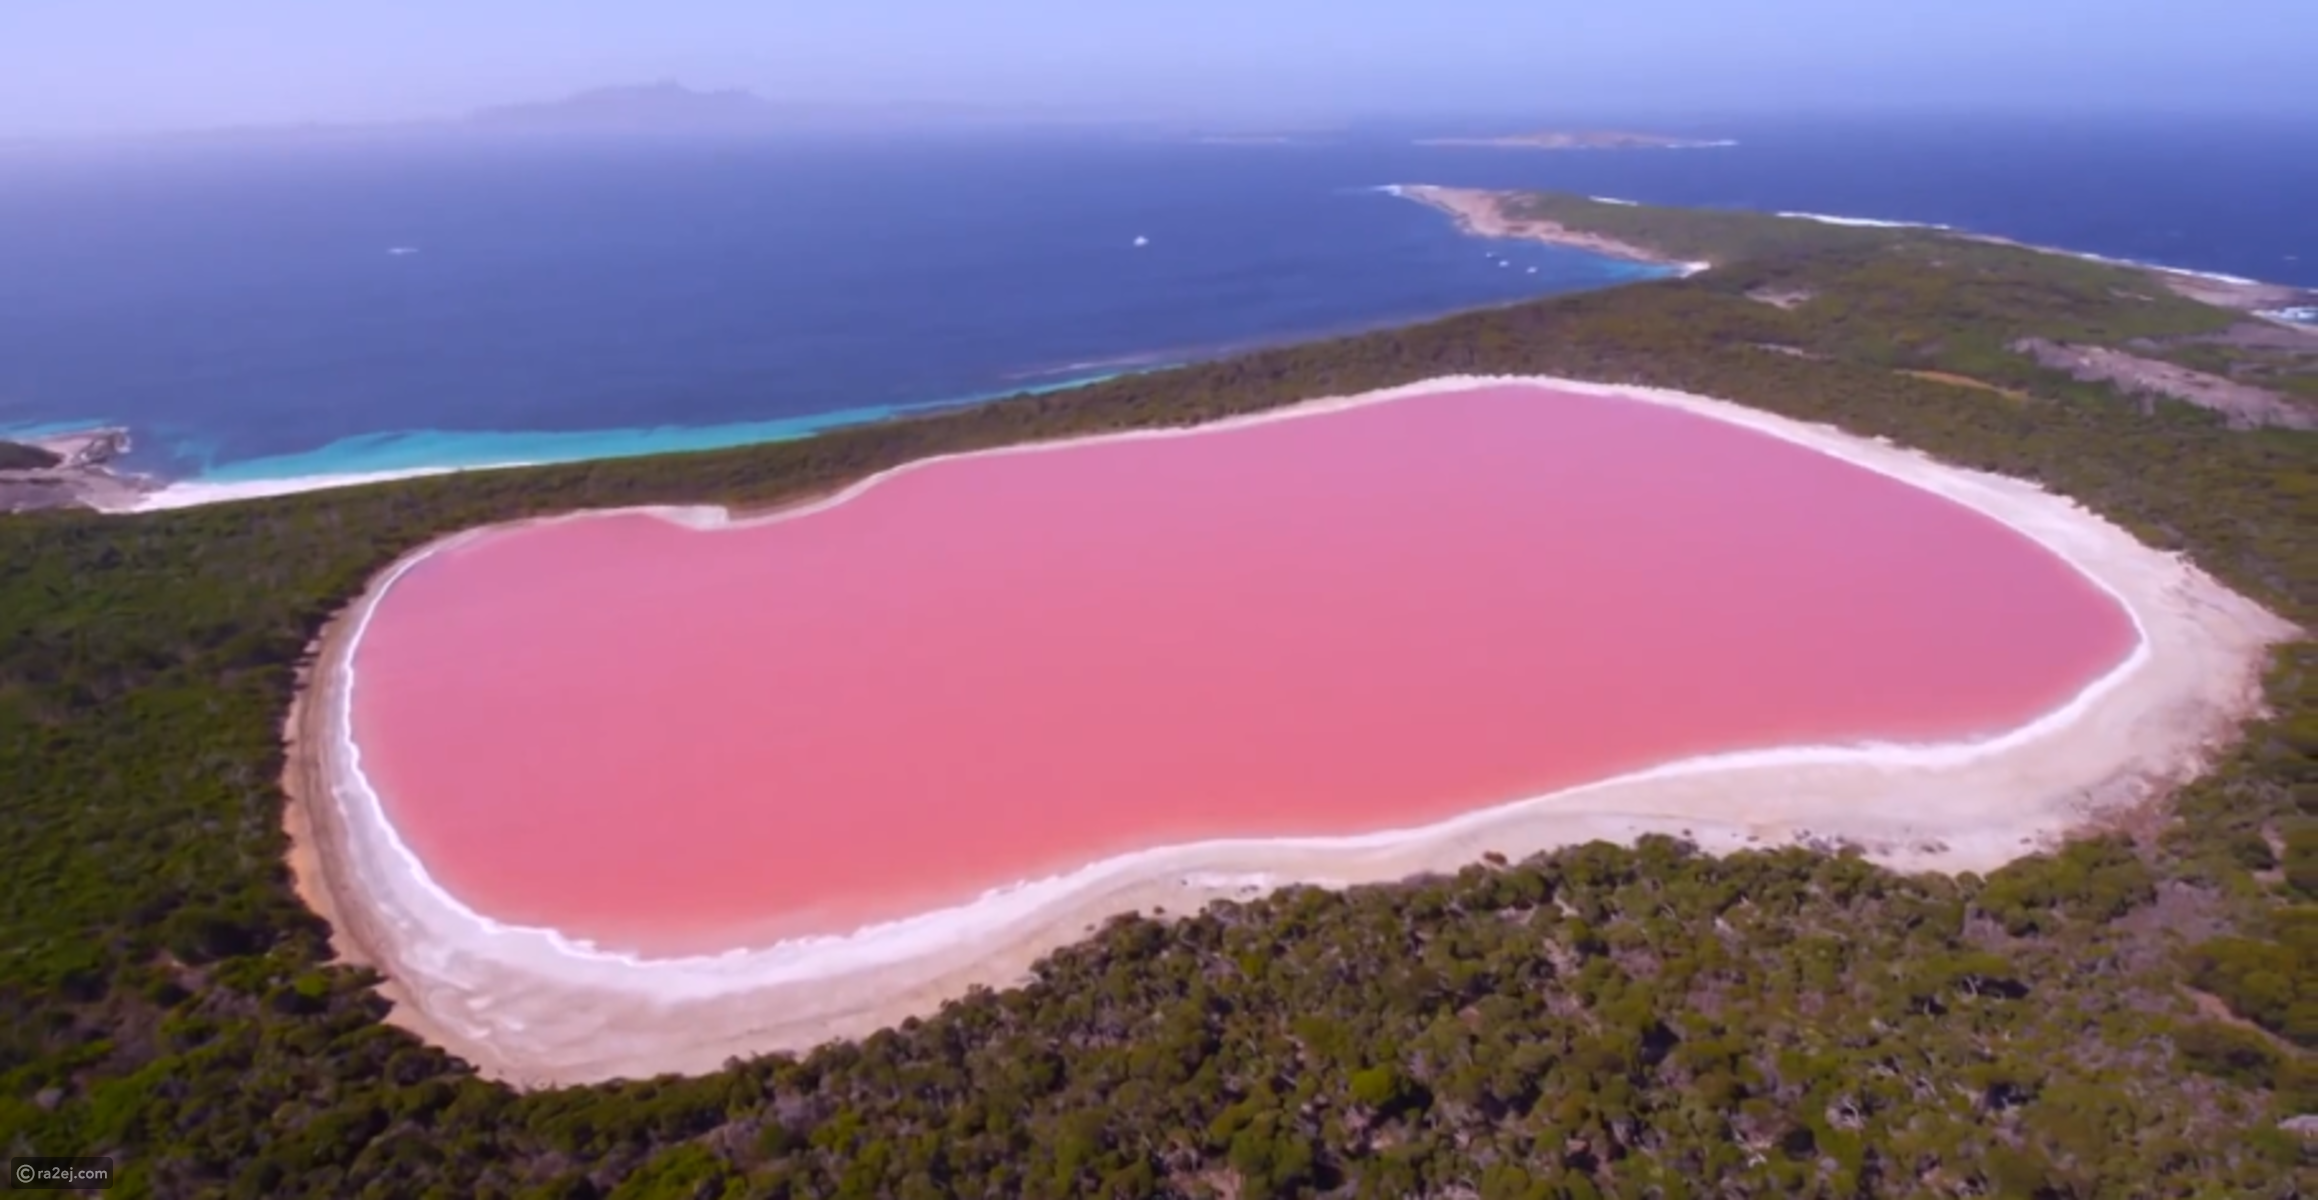 بحيرة هيلير أو البحيرة الوردية في غرب أستراليا C0876a1f1914d384cc2270dadc0a04c6309246b0-041016125312.png?preset=v3